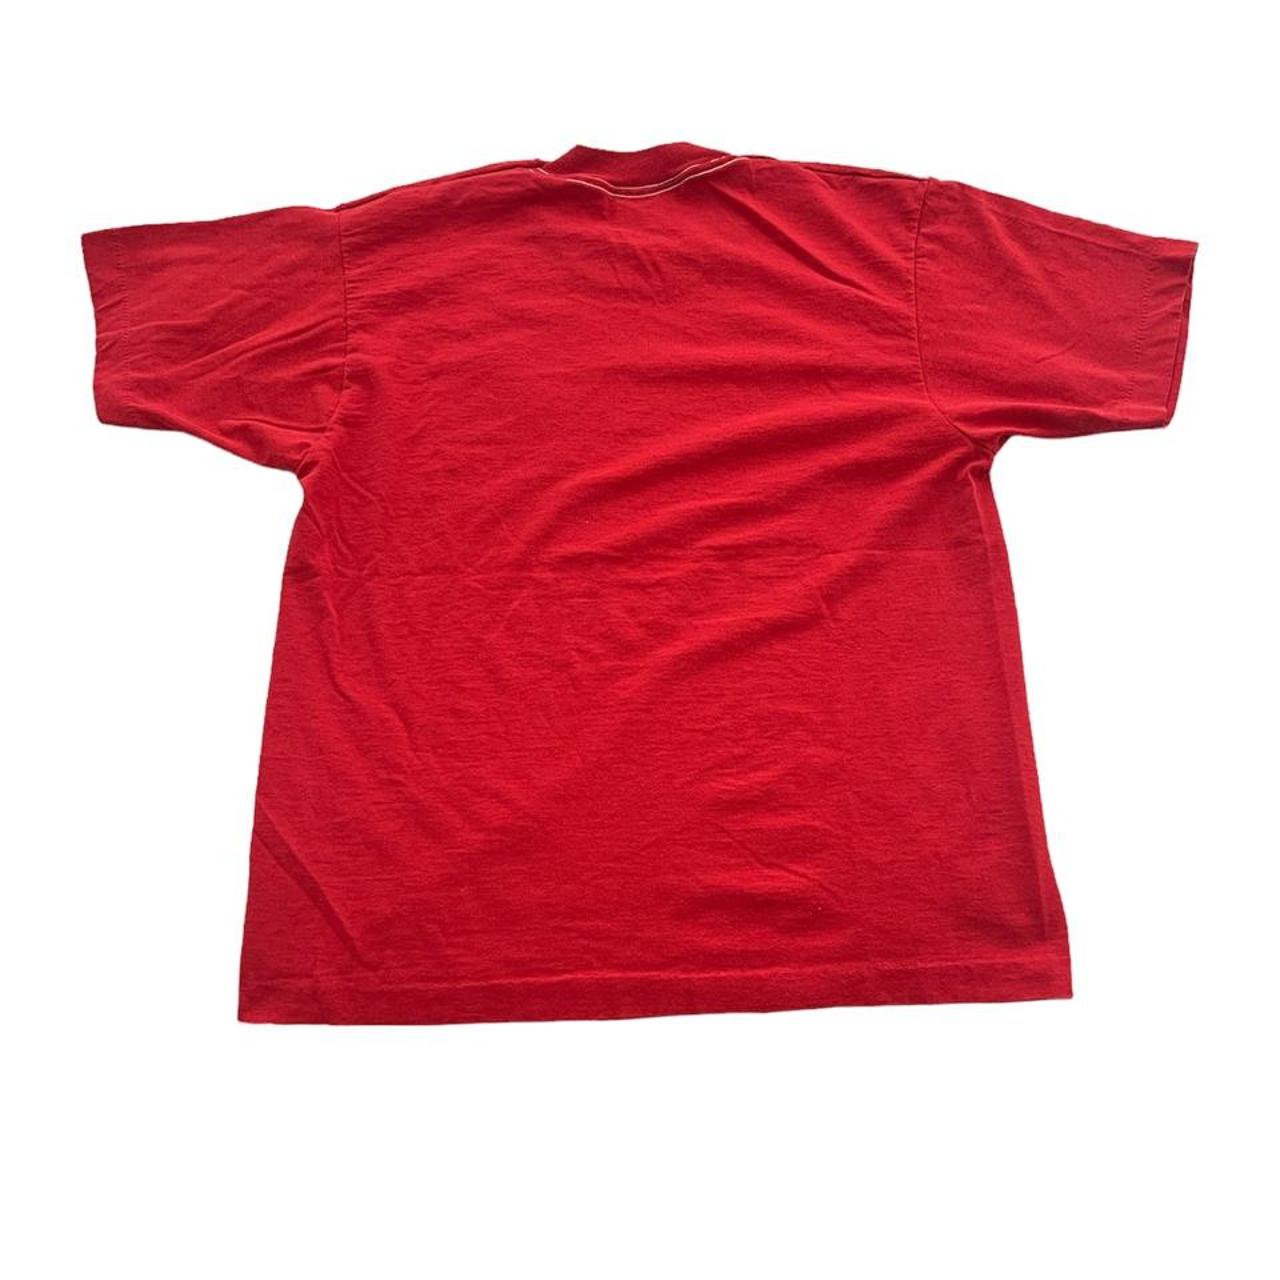 Product Image 2 - Vintage Lake Ozark University Shirt

-